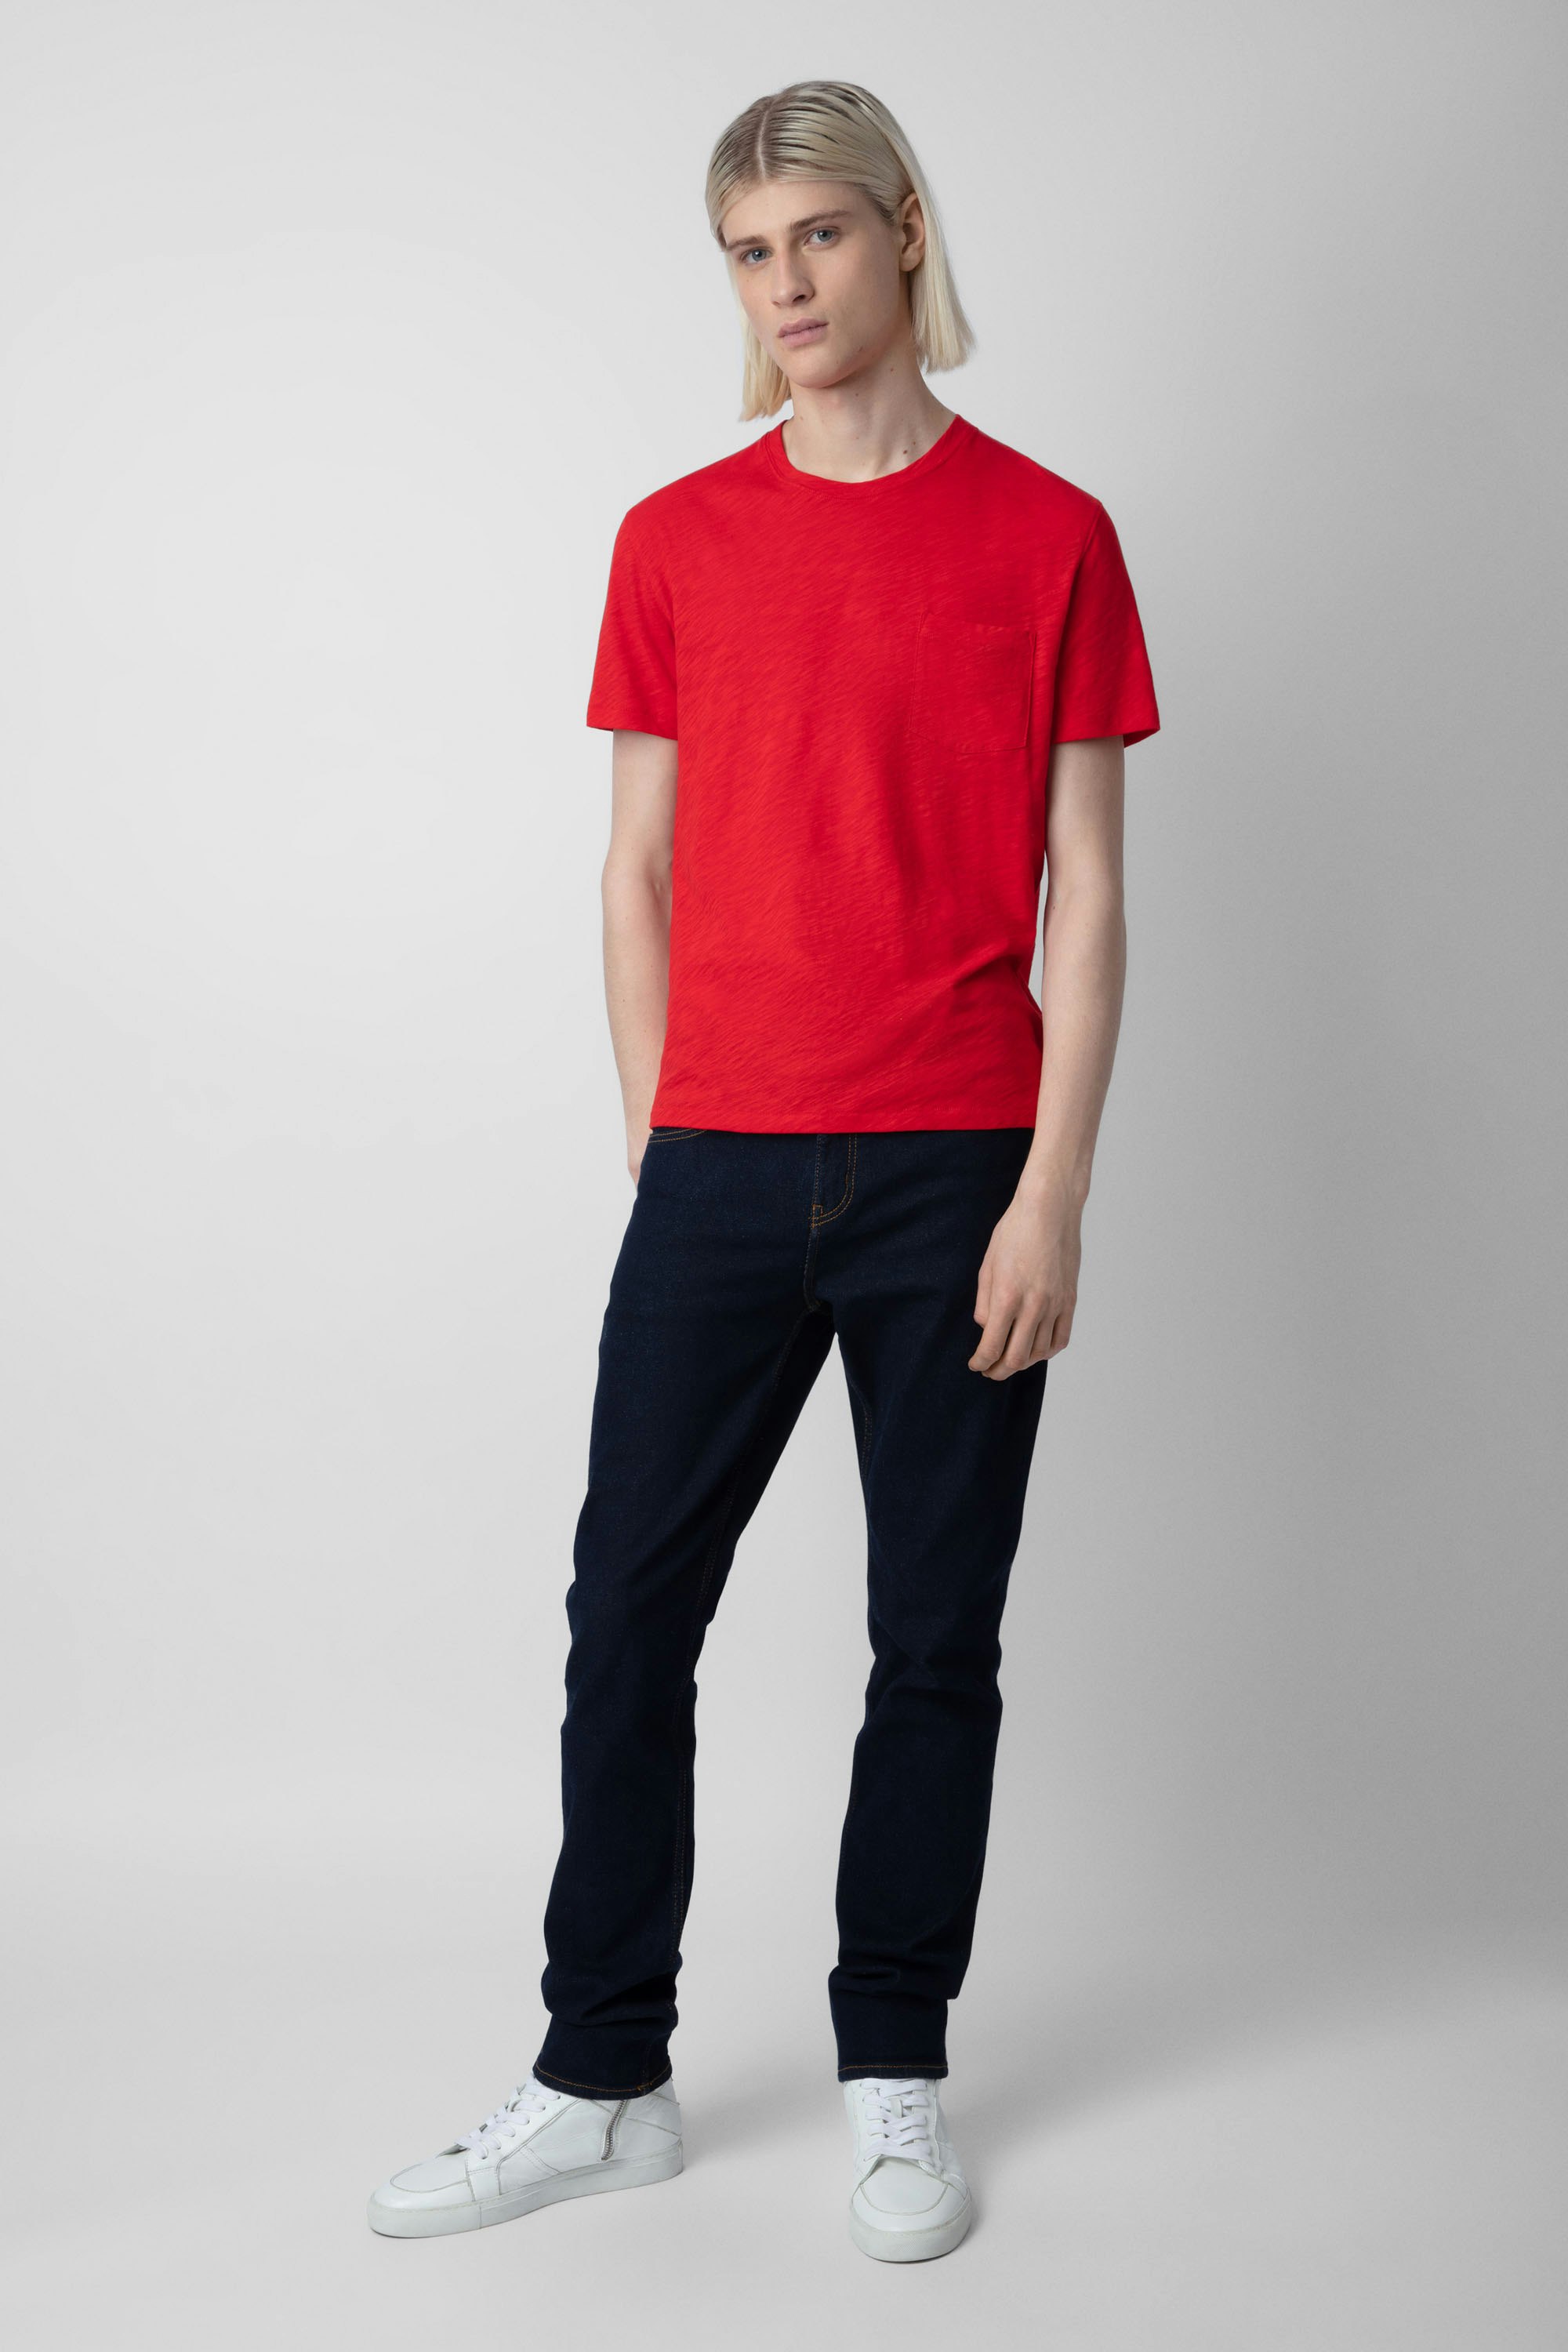 T-shirt Stockholm Flamme - T-shirt en coton flammé rouge orné d'une poche poitrine et d'un motif Skull au dos.